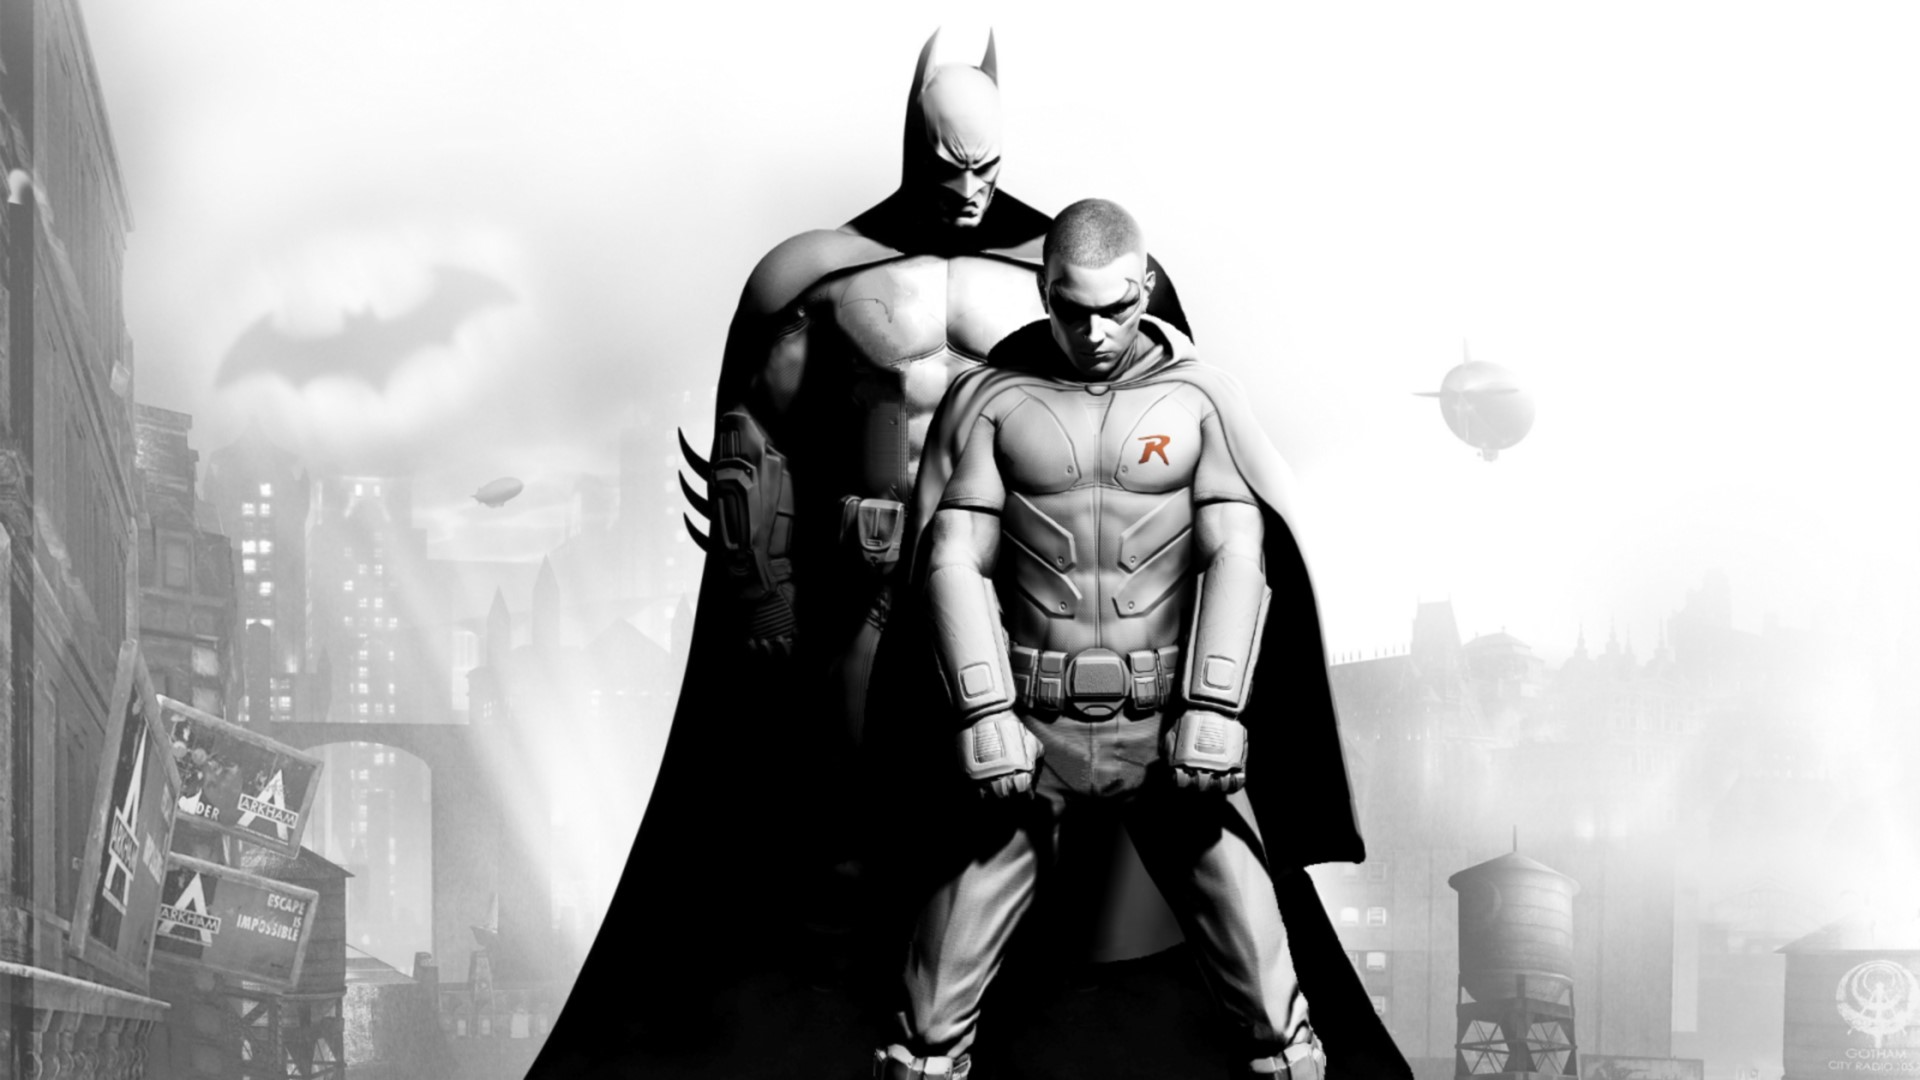 46+] Batman and Robin Wallpaper - WallpaperSafari